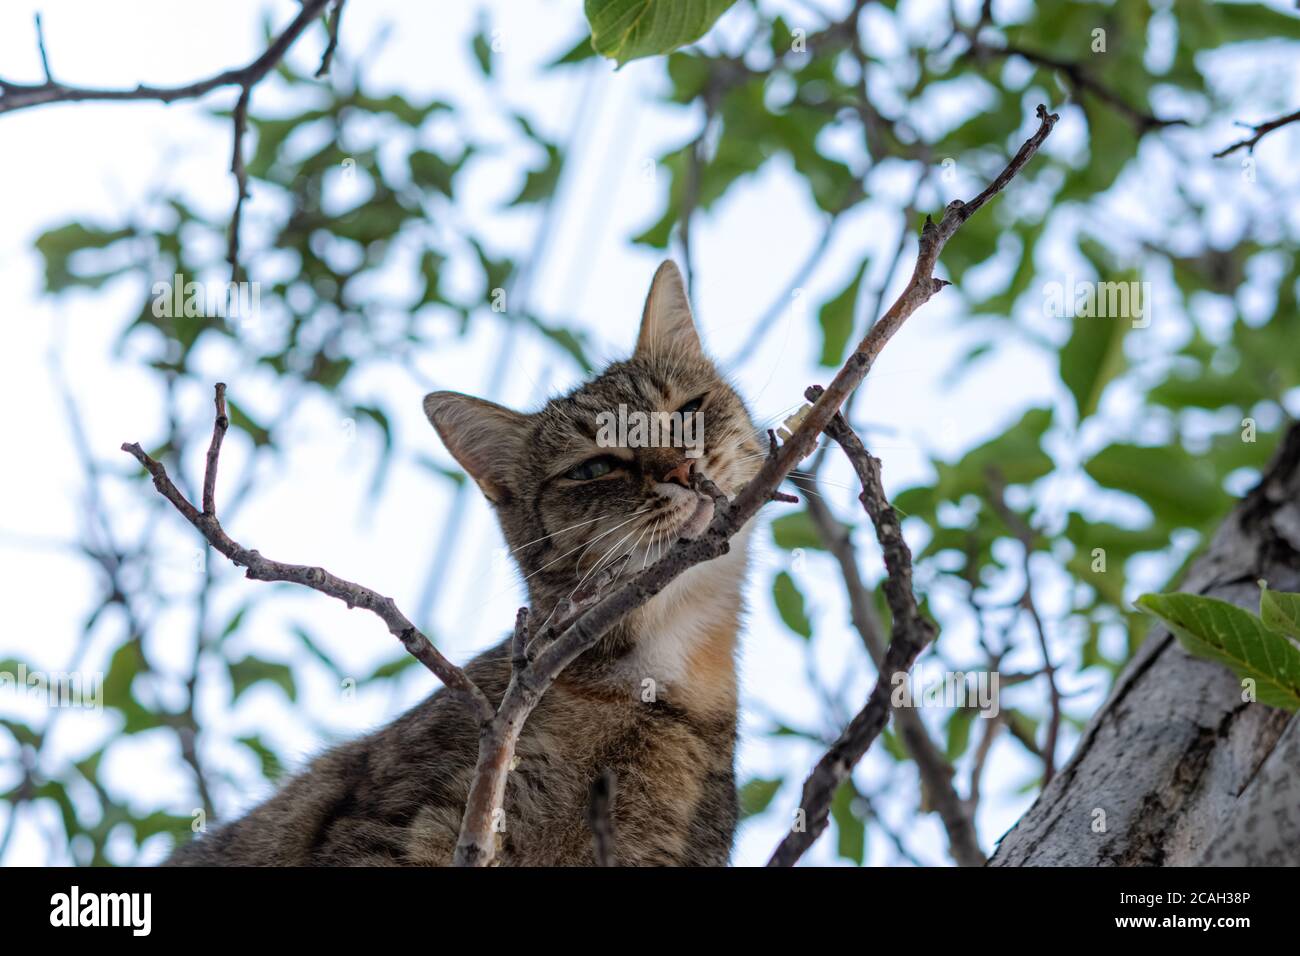 Eine graue junge Katze sitzt auf einem Baum und schaut spielerisch direkt auf die Kamera. Street tabby Katze mit schönen grünen Augen. Porträt einer Katze in Nahaufnahme Stockfoto